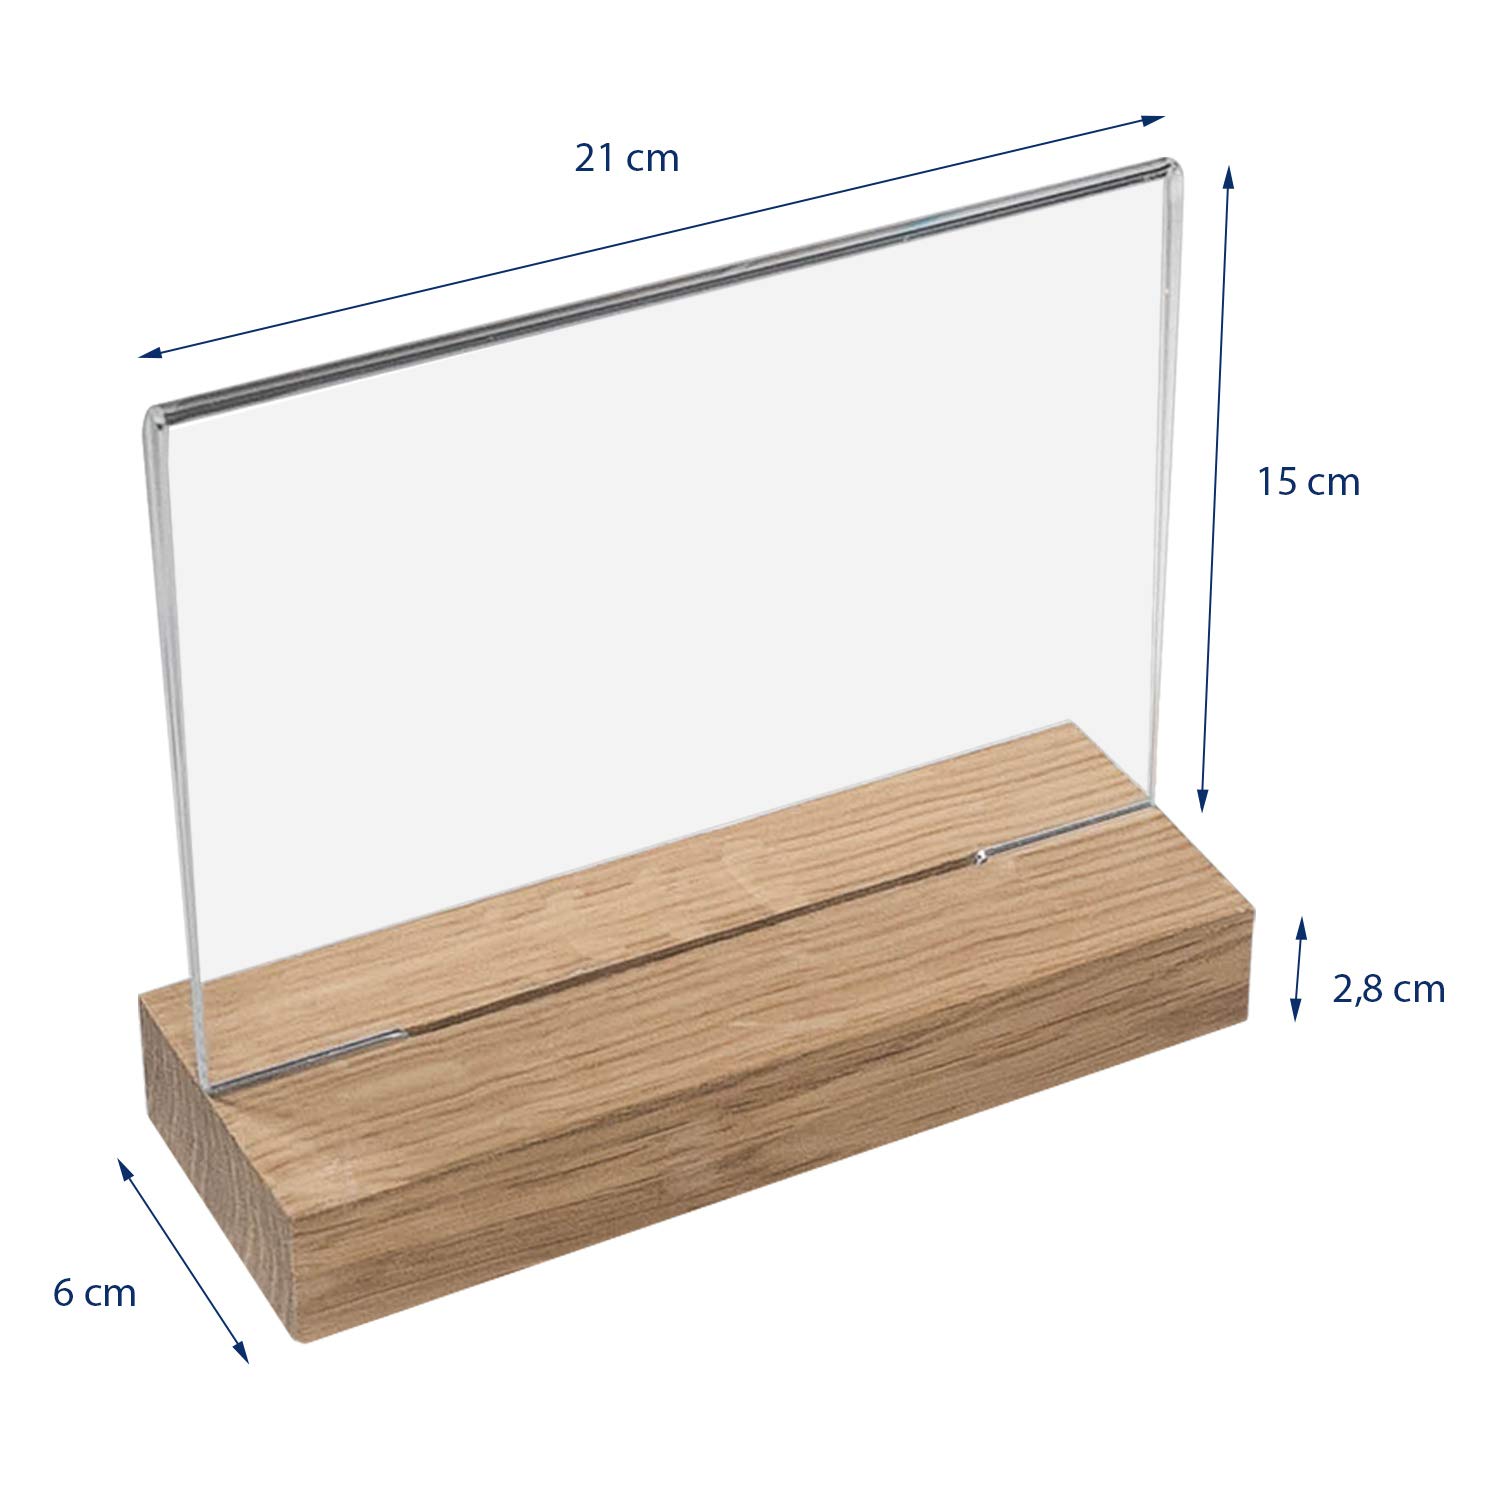 HMF 5x Acryl Tischaufsteller mit Holzfuß DIN A5 Querformat